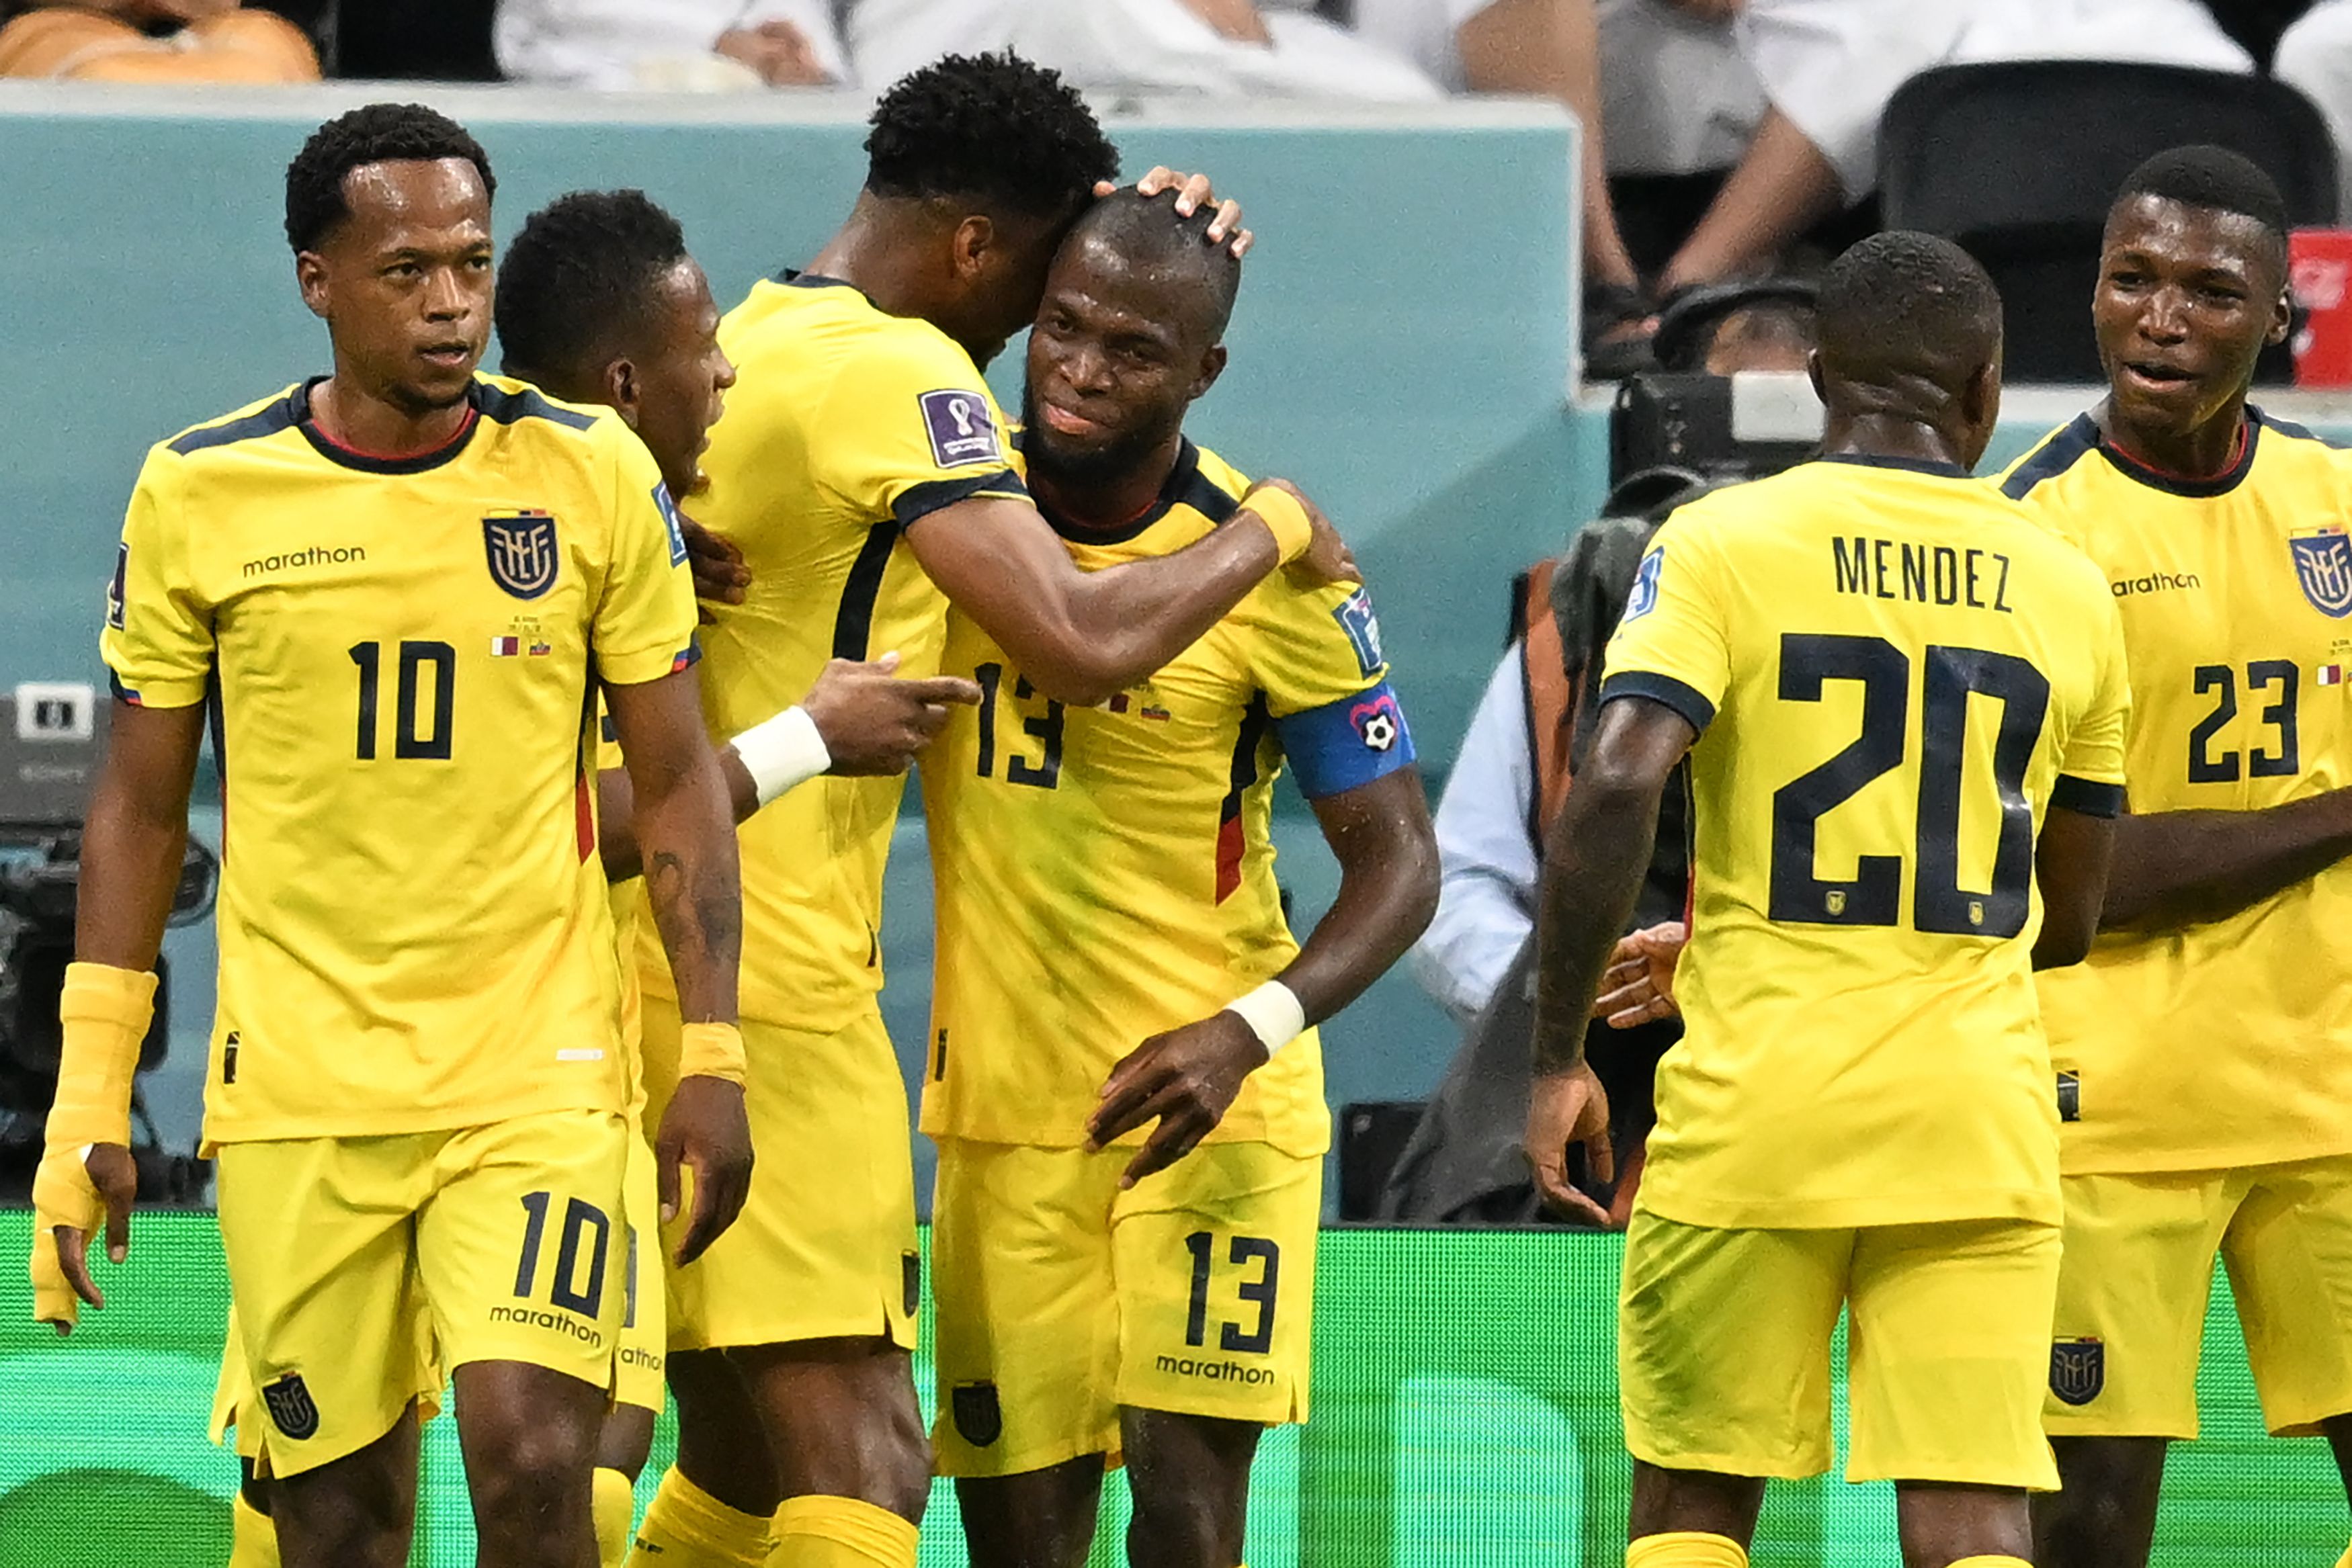 FIESTA NACIONAL! Contundente triunfo de la selección de Ecuador 2-0 sobre el anfitrión Qatar en el partido inaugural del Mundial 2022 | Fútbol | Deportes | El Universo